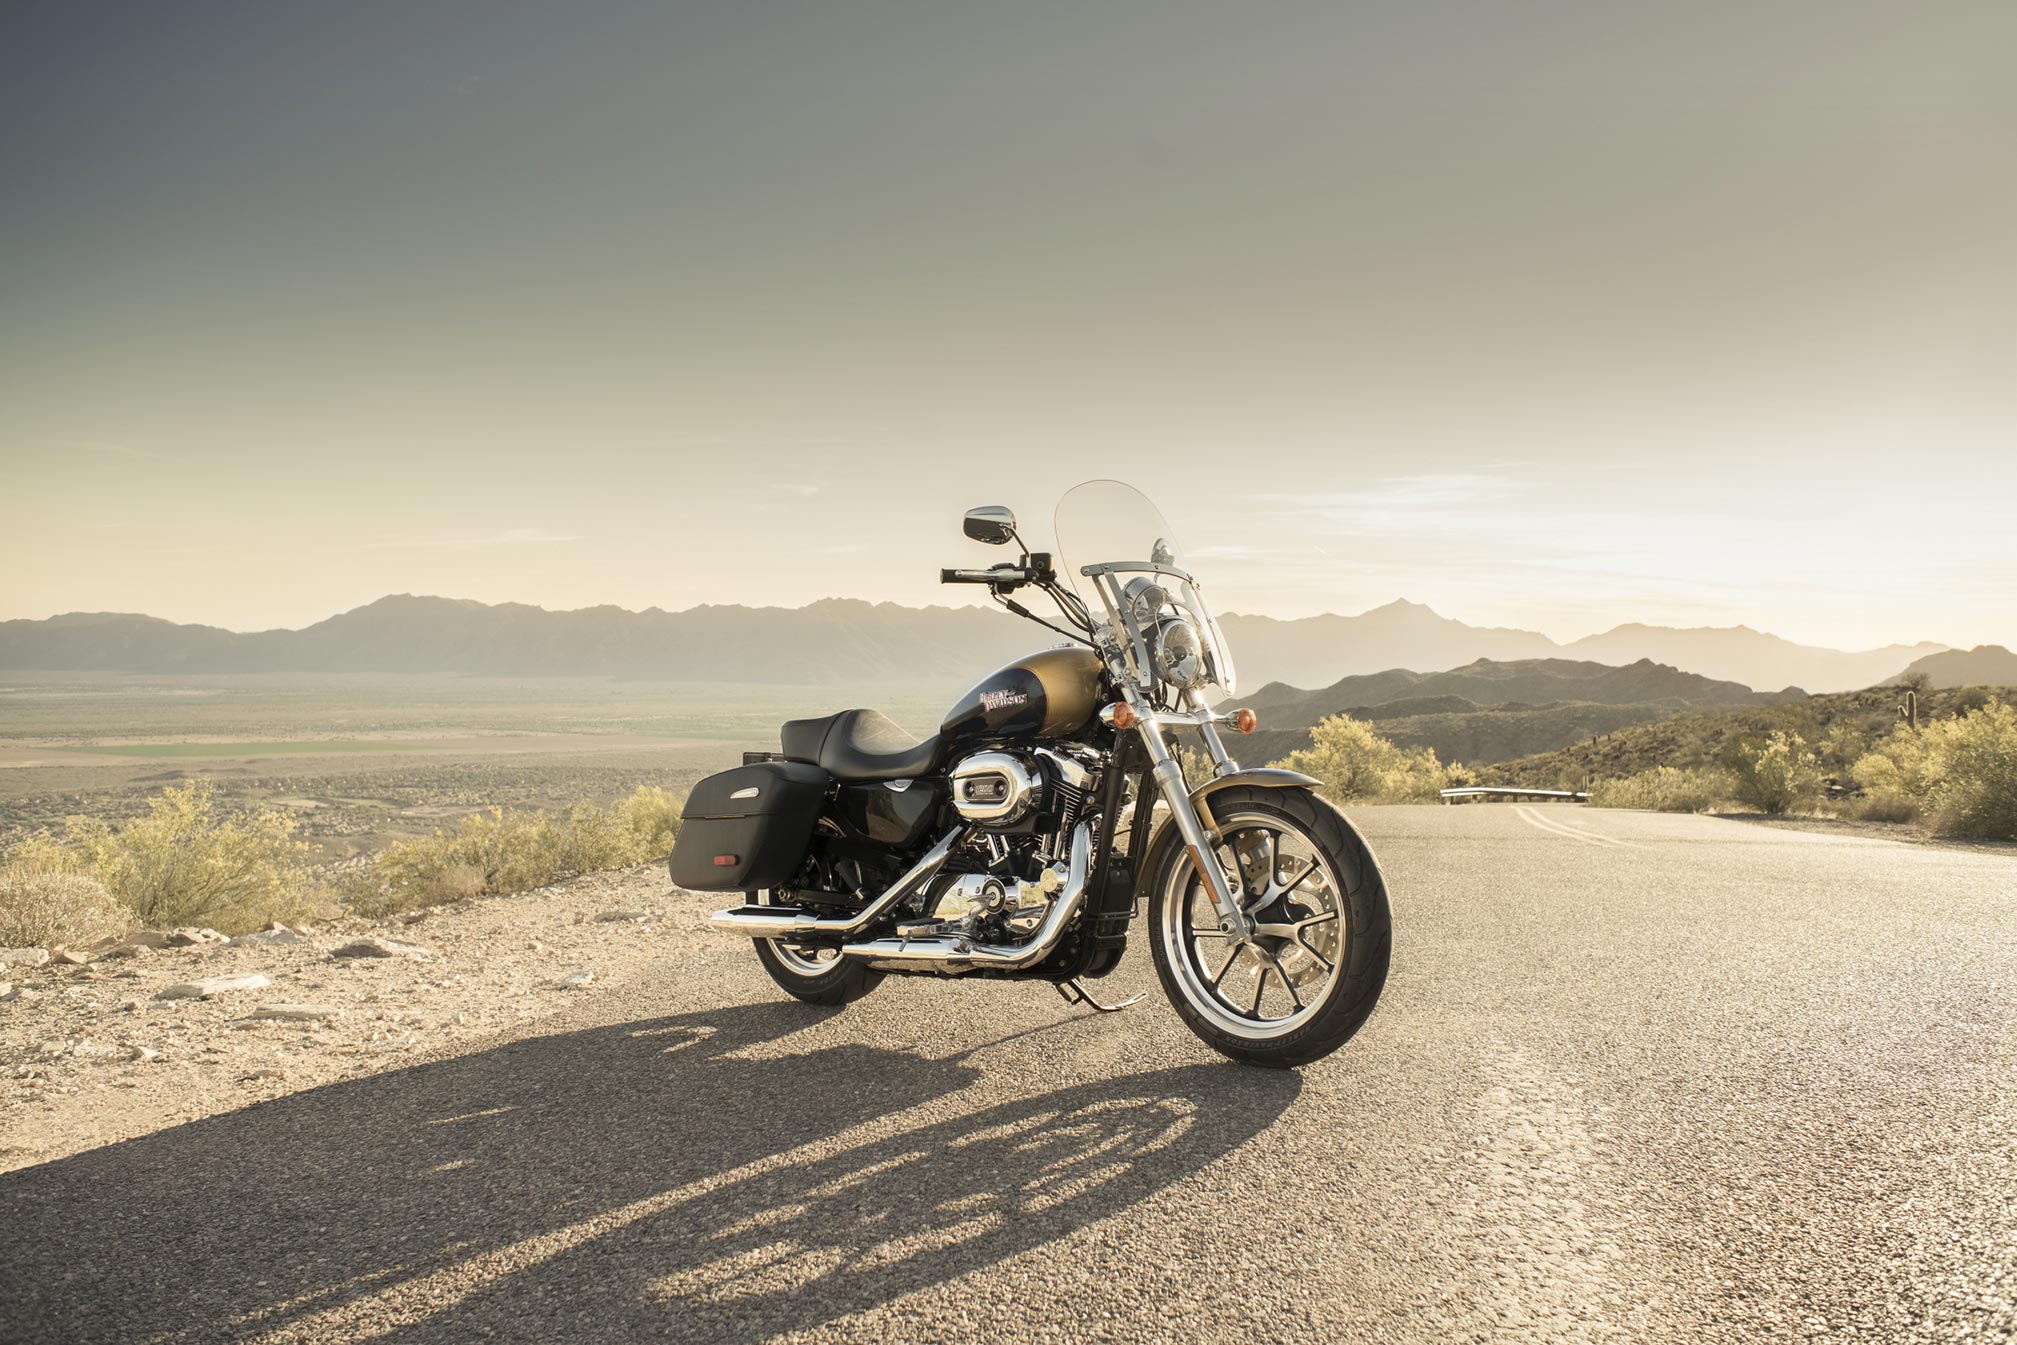 Télécharger des fonds d'écran Harley Davidson Super Low HD